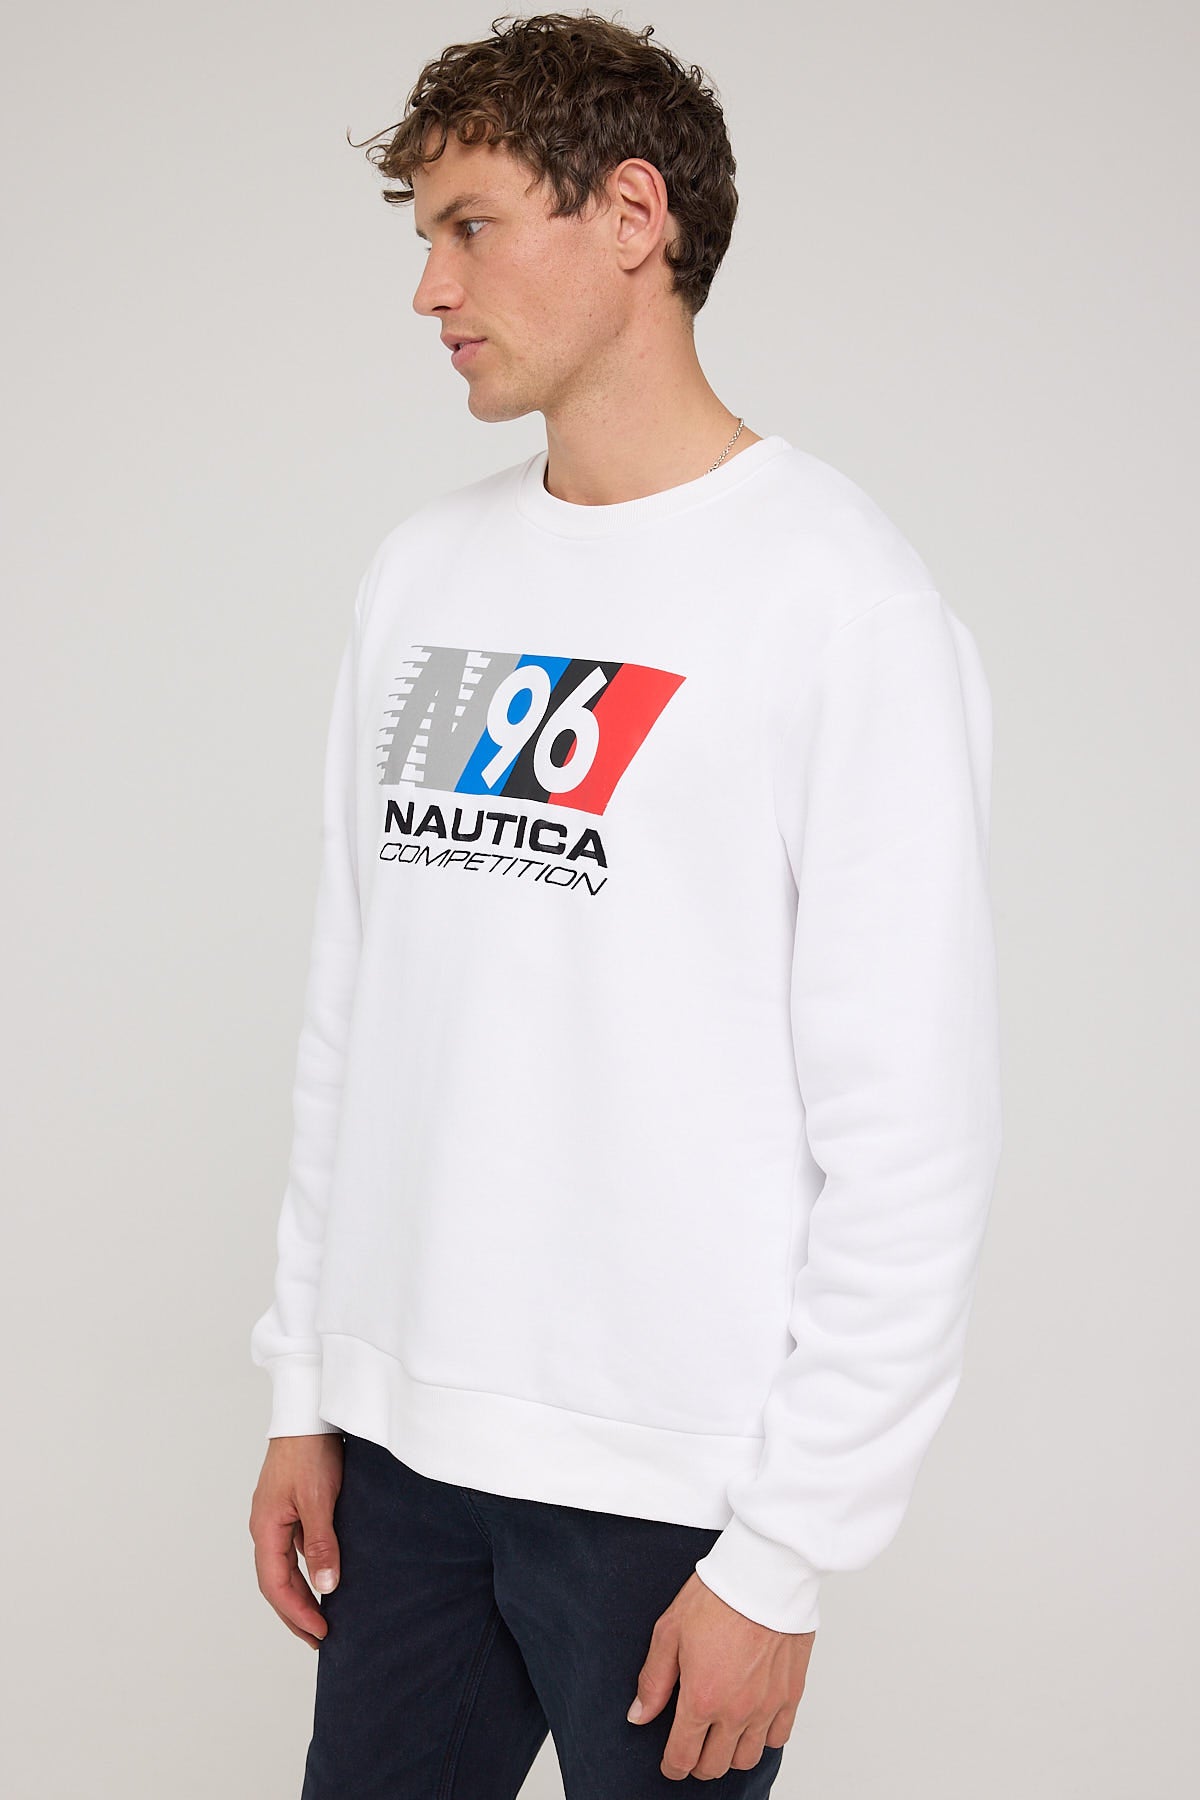 Nautica Heyer Sweatshirt White